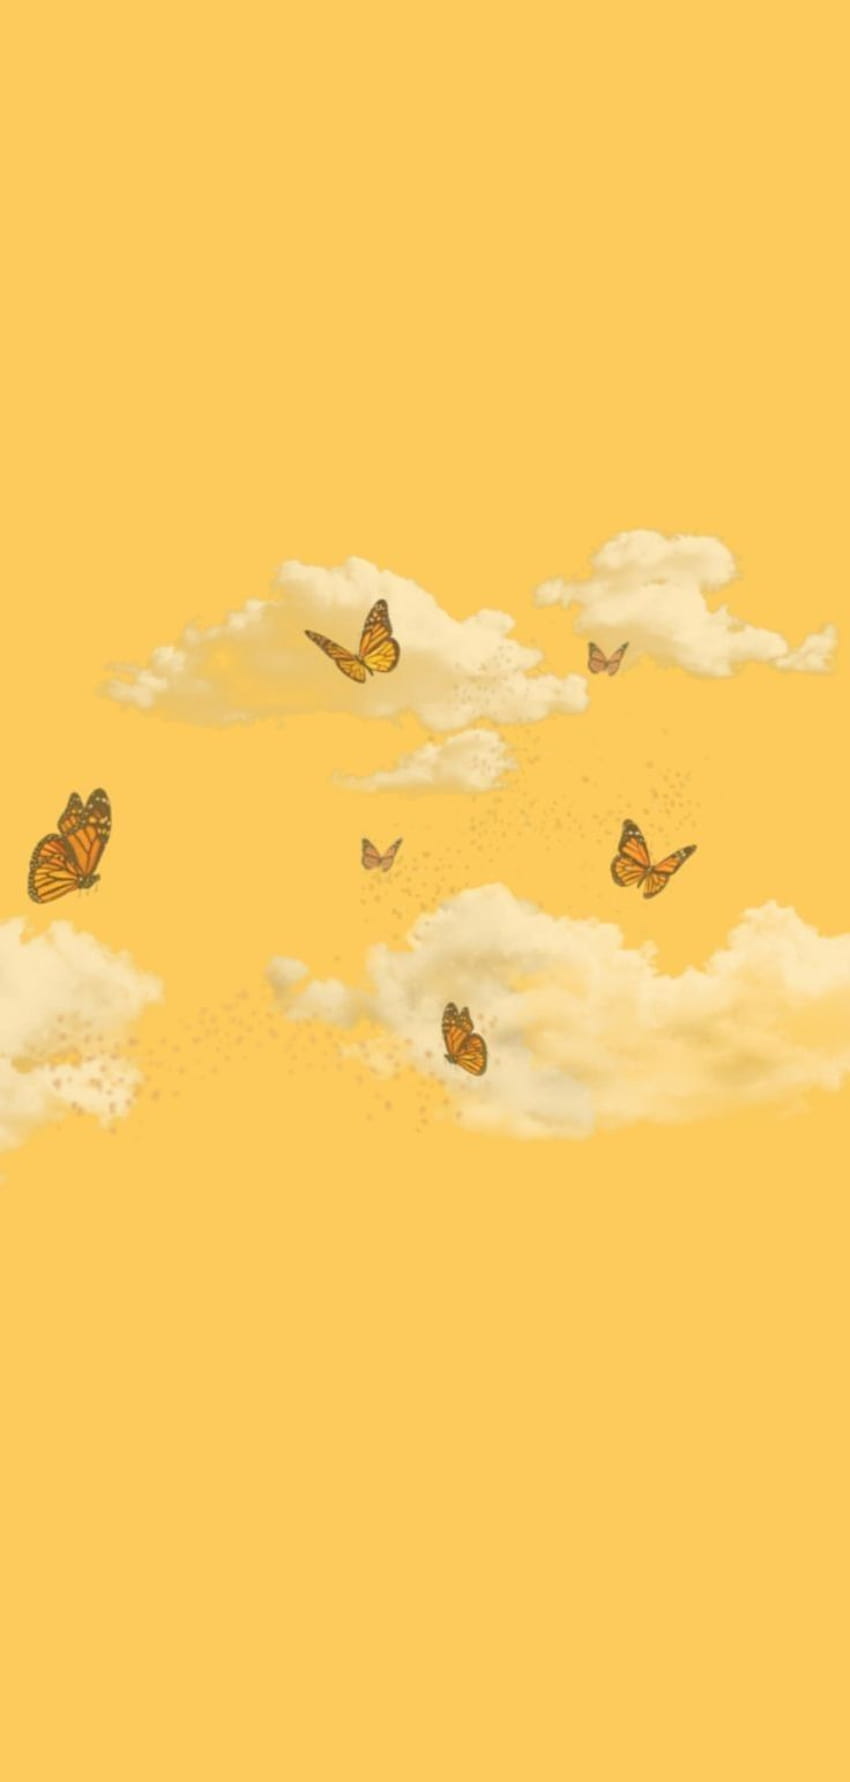 Sắc vàng của chú bướm tạo nên một phong cách thẩm mỹ tuyệt vời cho bất kỳ màn hình điện thoại nào. Xem hình ảnh để chiêm ngưỡng sự hoàn hảo của sắc vàng và bướm!